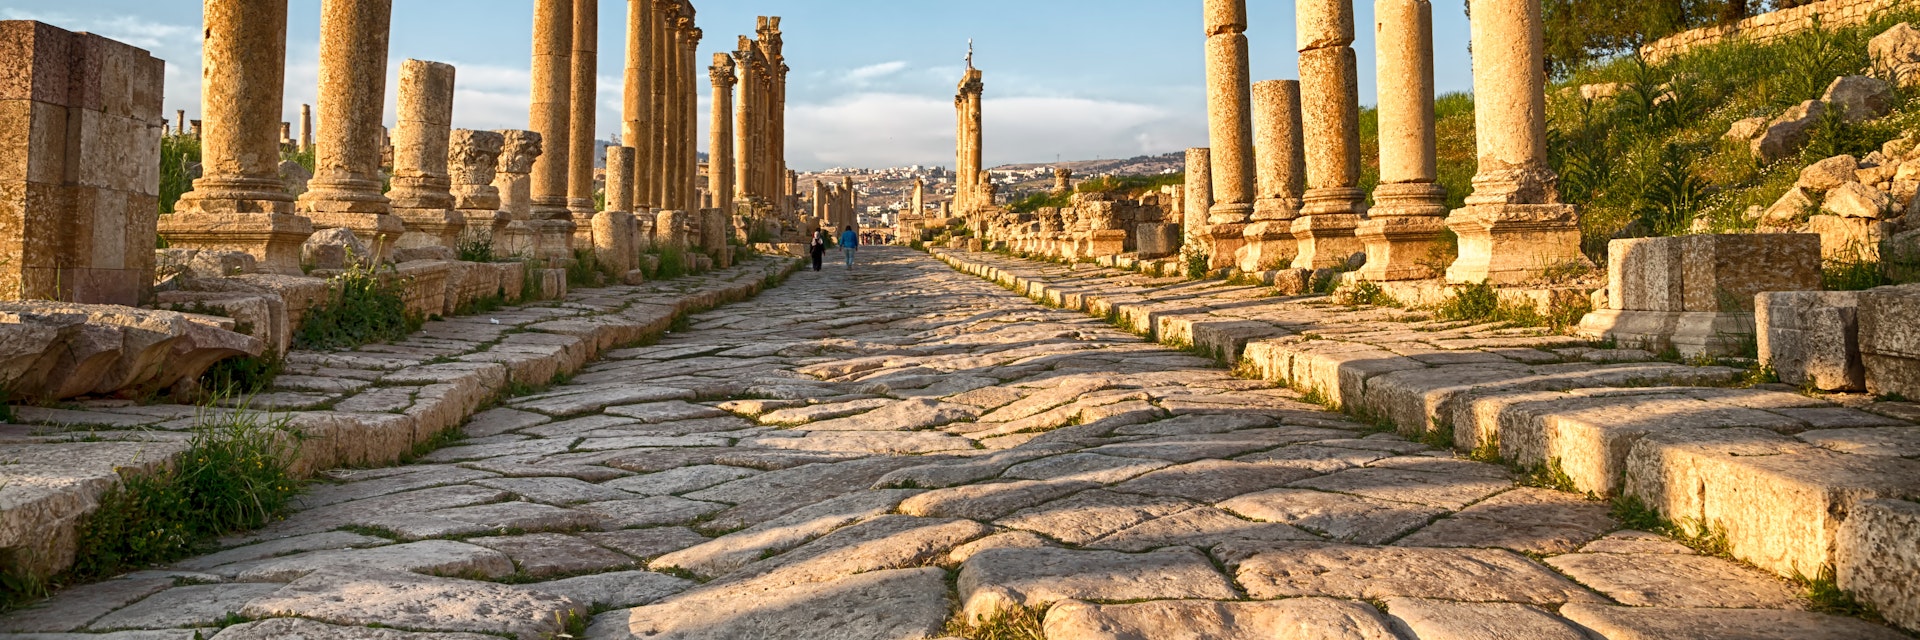 Columns and stone road at the Roman Ruins of Jerash.